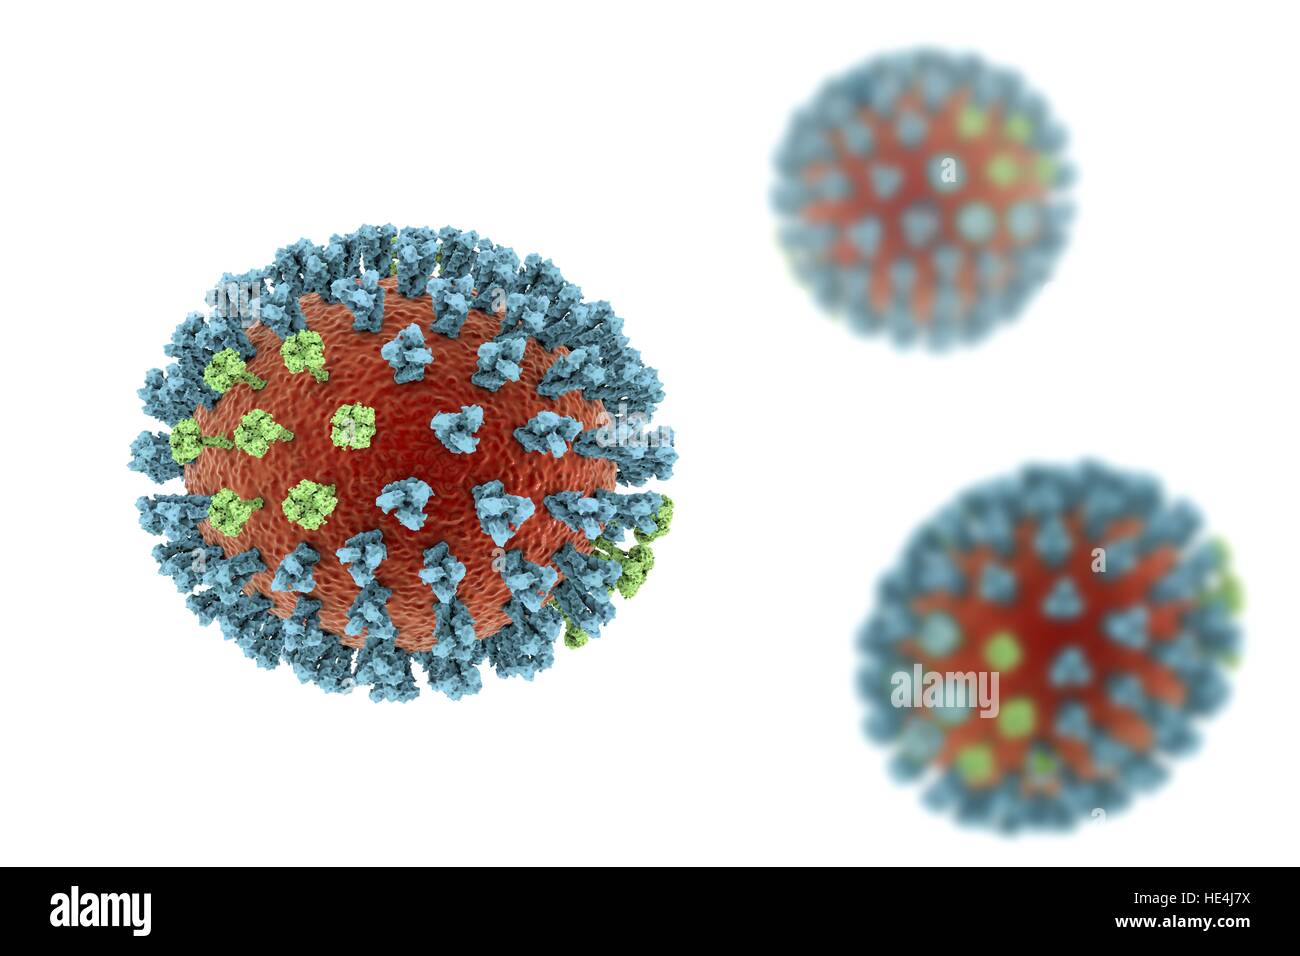 Virus de la grippe aviaire. 3D illustration de la grippe aviaire H5N8 Particules de virus. Au sein de l'enveloppe lipidique virale (orange) sont deux types de protéines spike, l'hémagglutinine (H, bleu) et la neuraminidase (N, vert), qui déterminent la souche du virus. Cette souche du virus a causé la maladie chez les oiseaux sauvages et la volaille en Europe et en Asie depuis juin 2016. Exceptionnellement, le virus provoque la mortalité chez les oiseaux sauvages, qui sont plus souvent silencieux transporteurs. En décembre 2016, aucun cas de la maladie ont été signalés, et le risque de transmission à l'homme devrait être faible. Banque D'Images